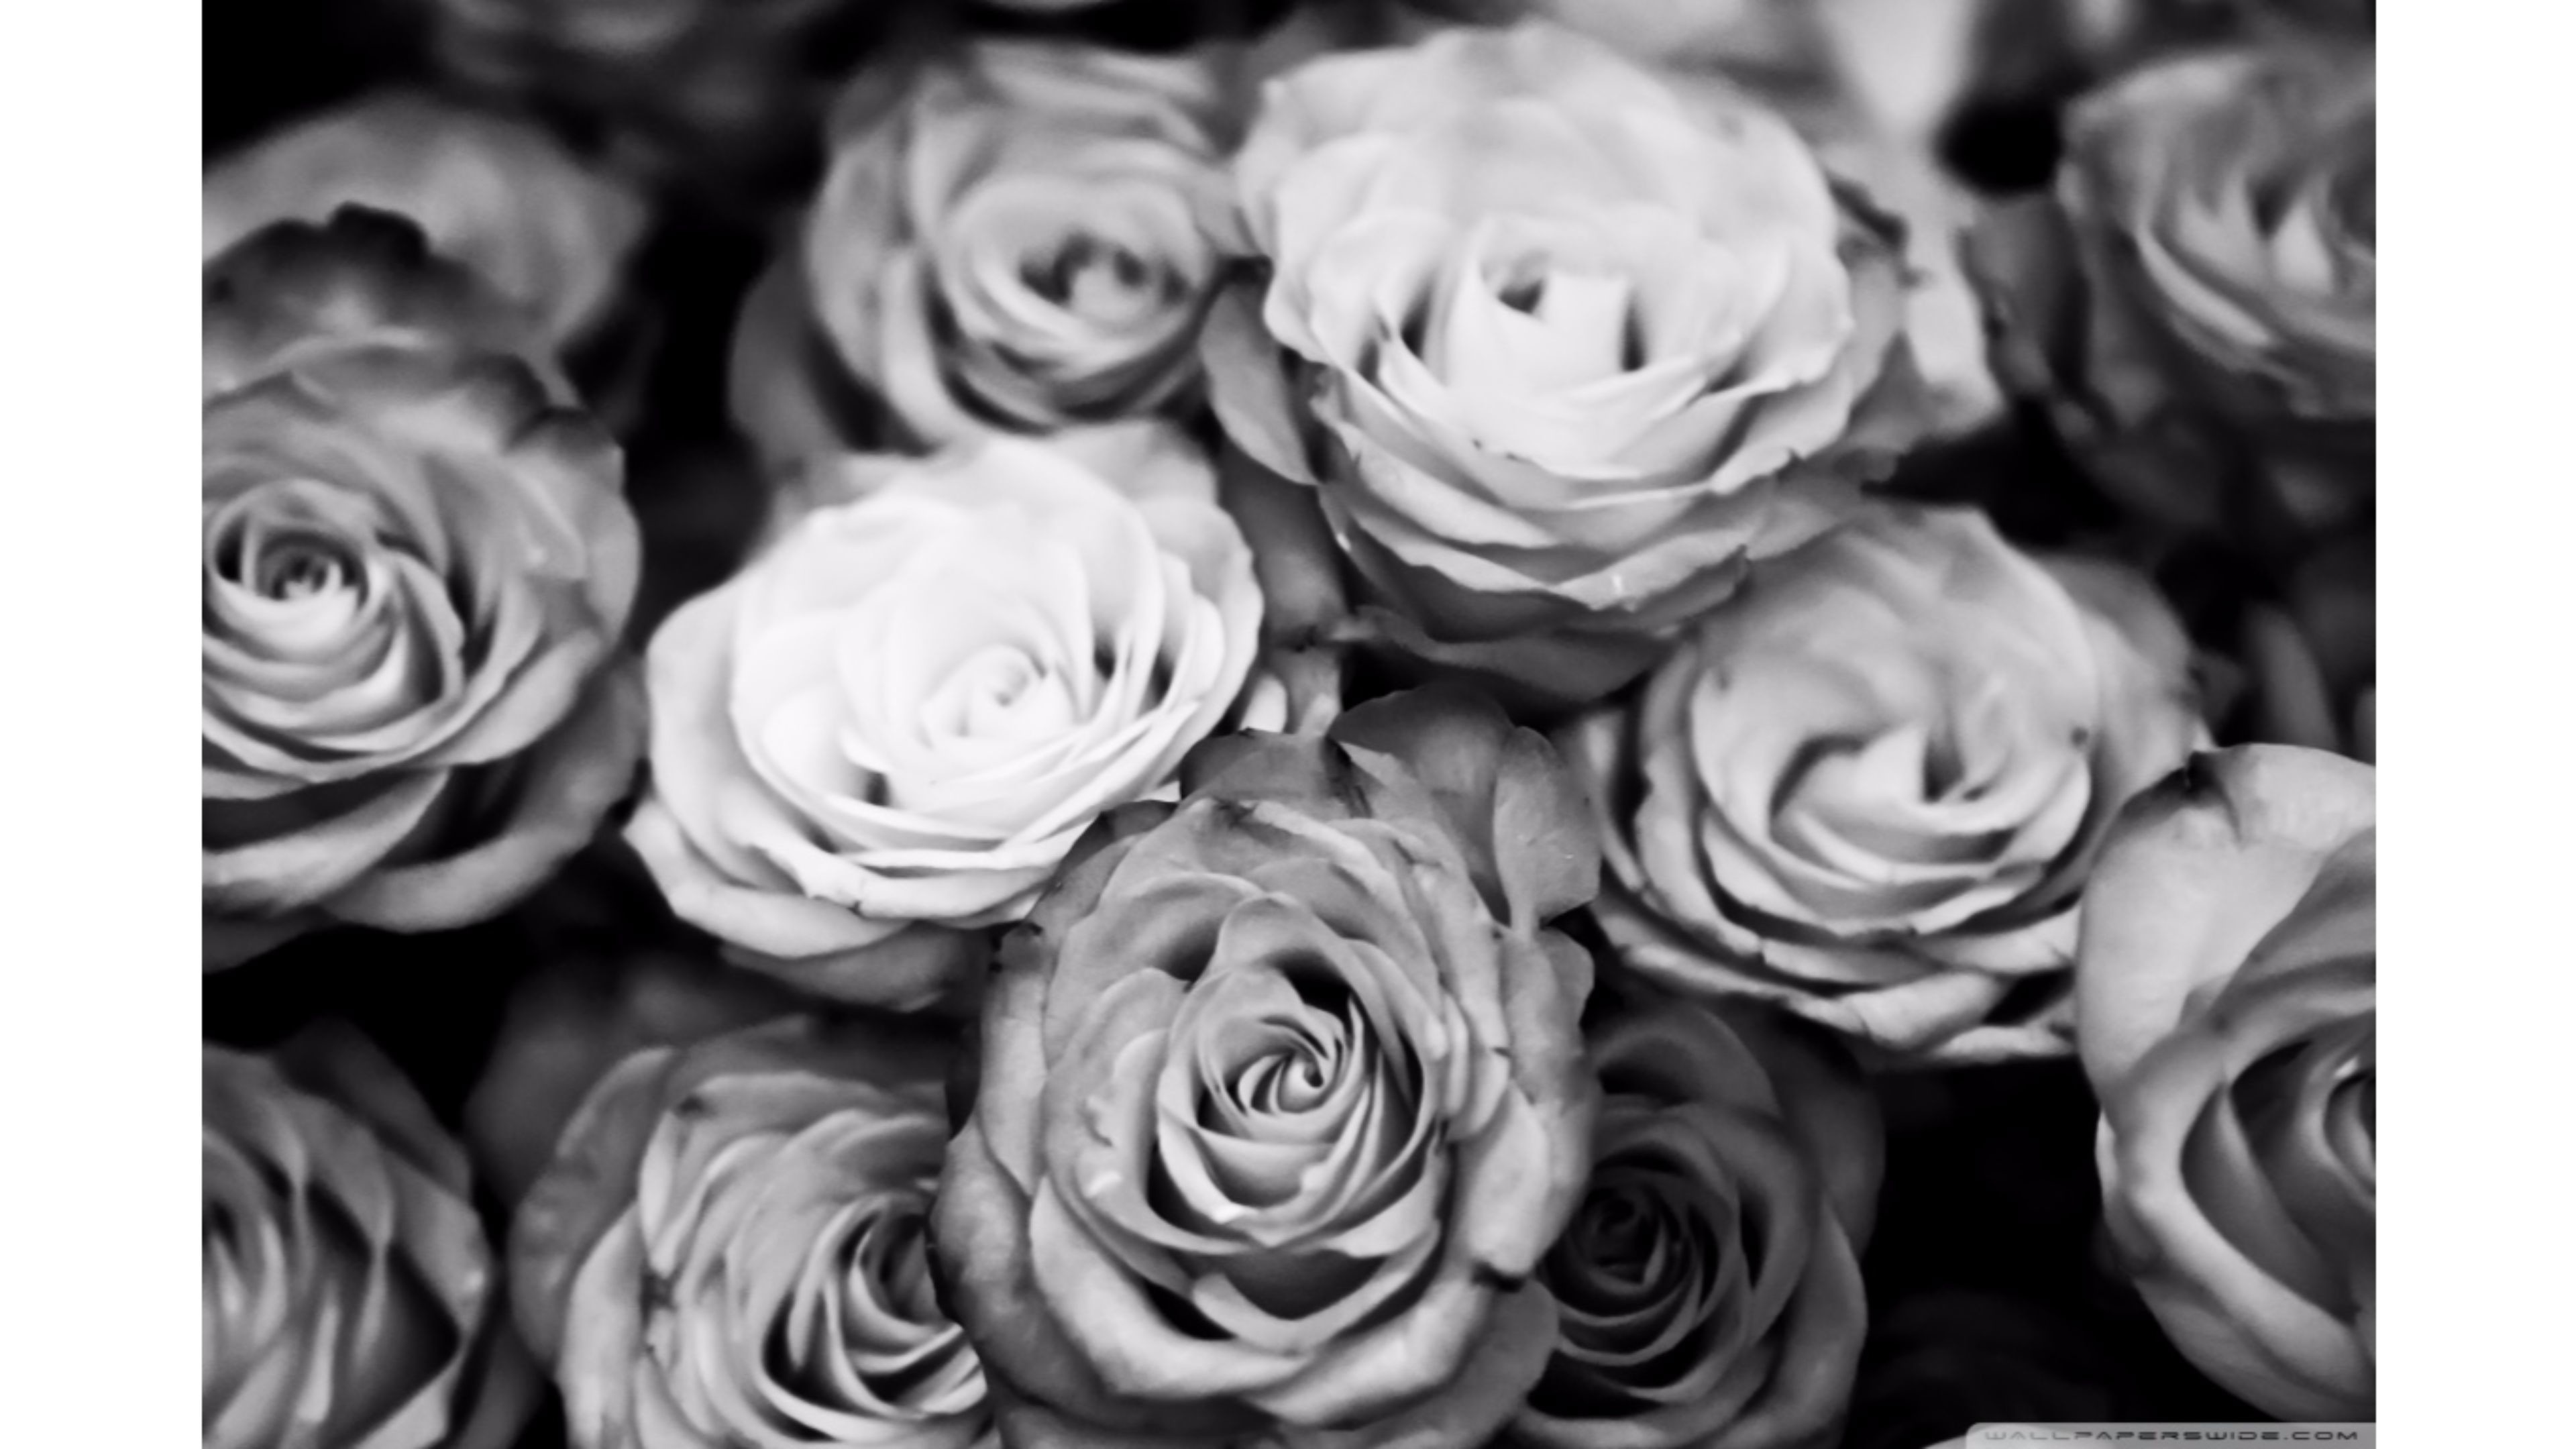 검은 색과 흰색 장미 벽지,정원 장미,하얀,흑백 사진,장미,꽃